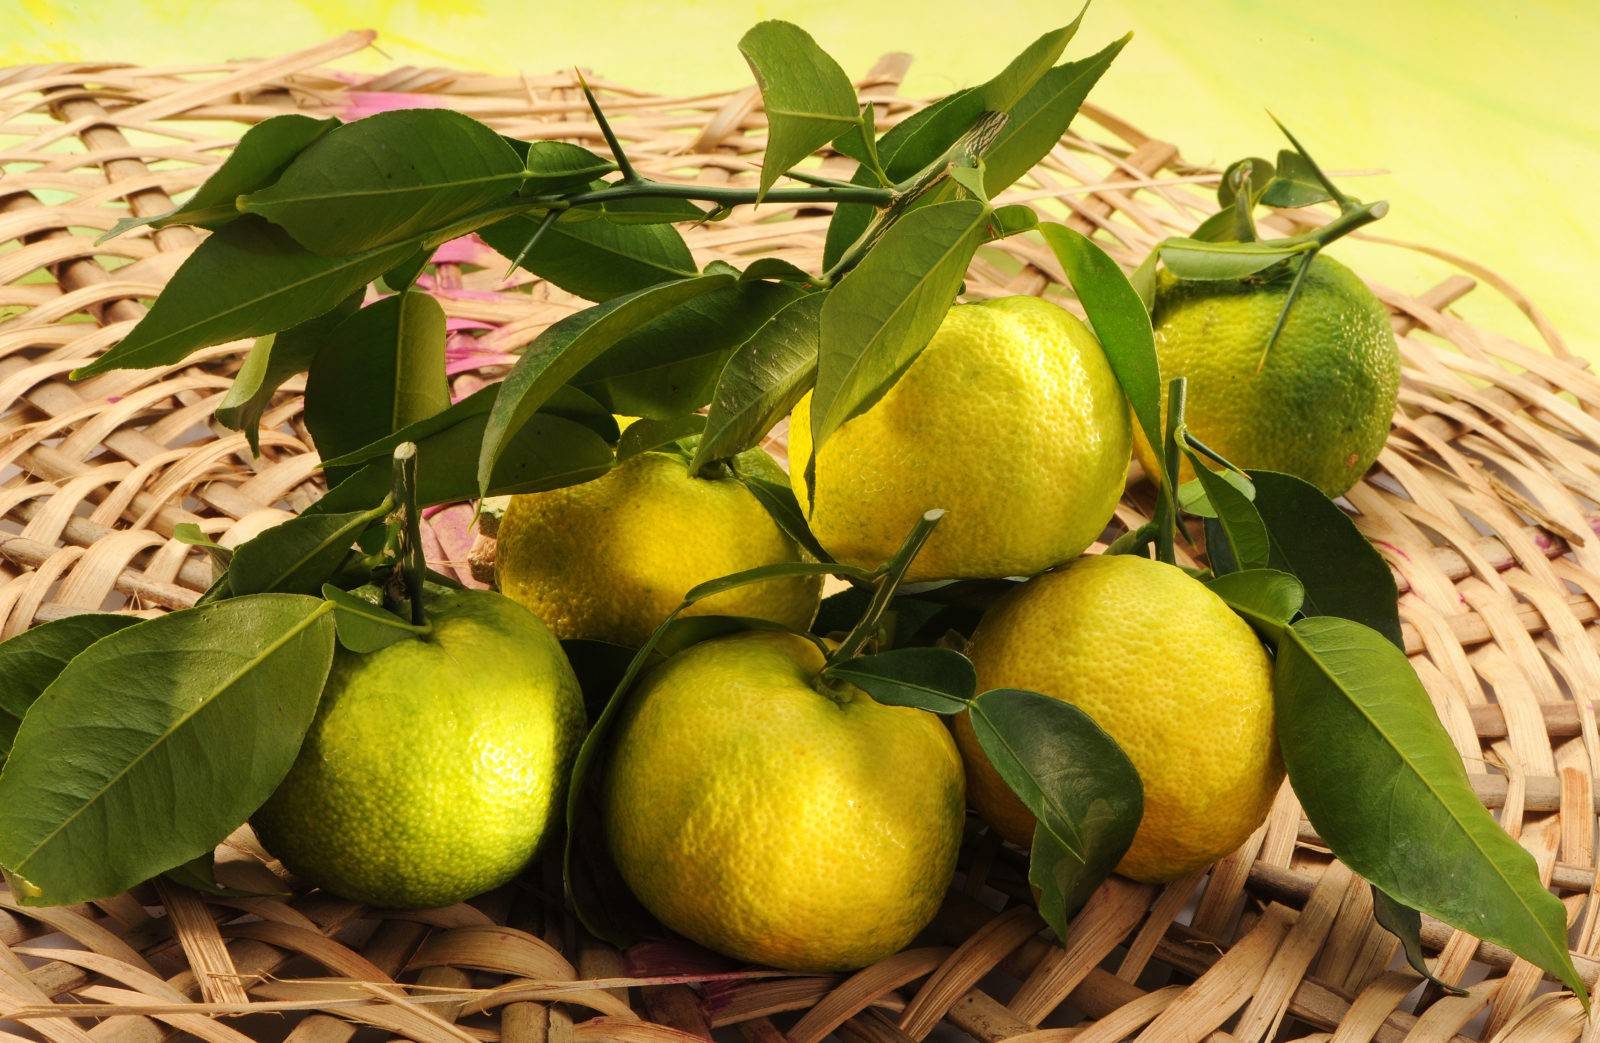 Японский лимон (юзу) – состав и описание продукта с фото; польза и вред; использование фрукта в кулинарии и косметологии